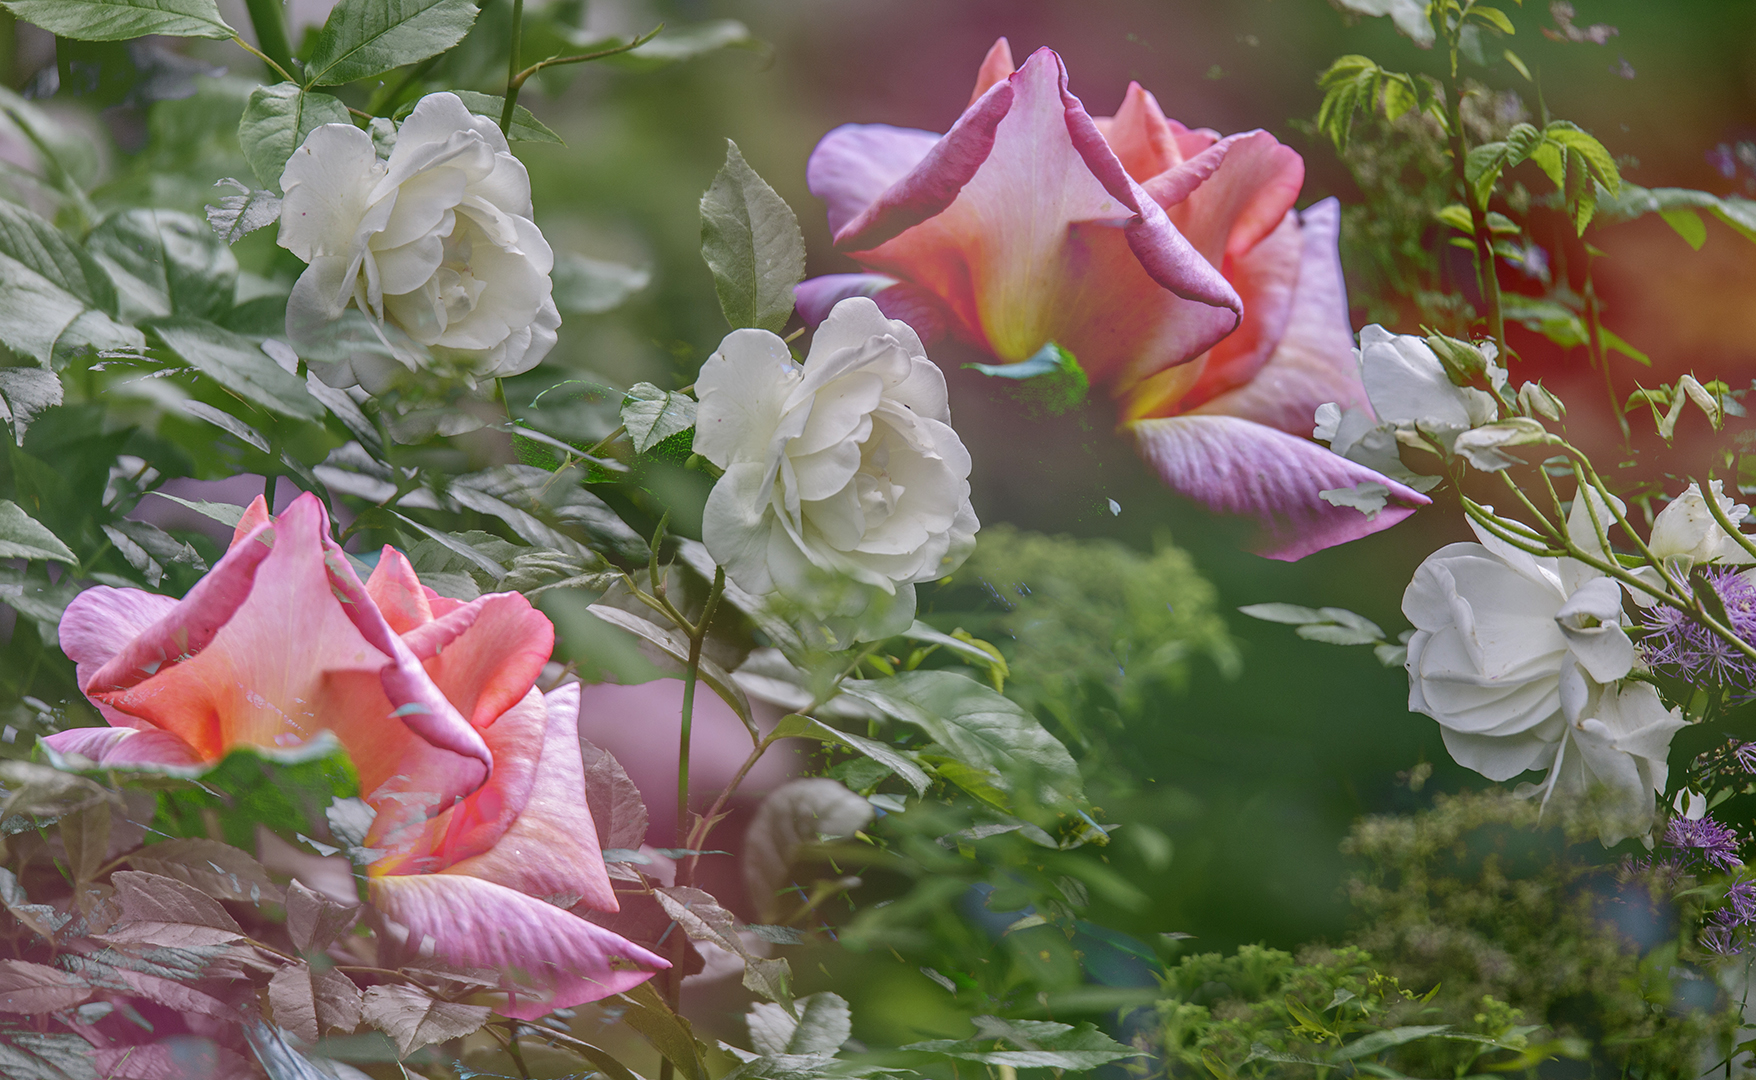 5239 Impressie rozen tuin Almere 2019-06-13 Bw-nv 1920